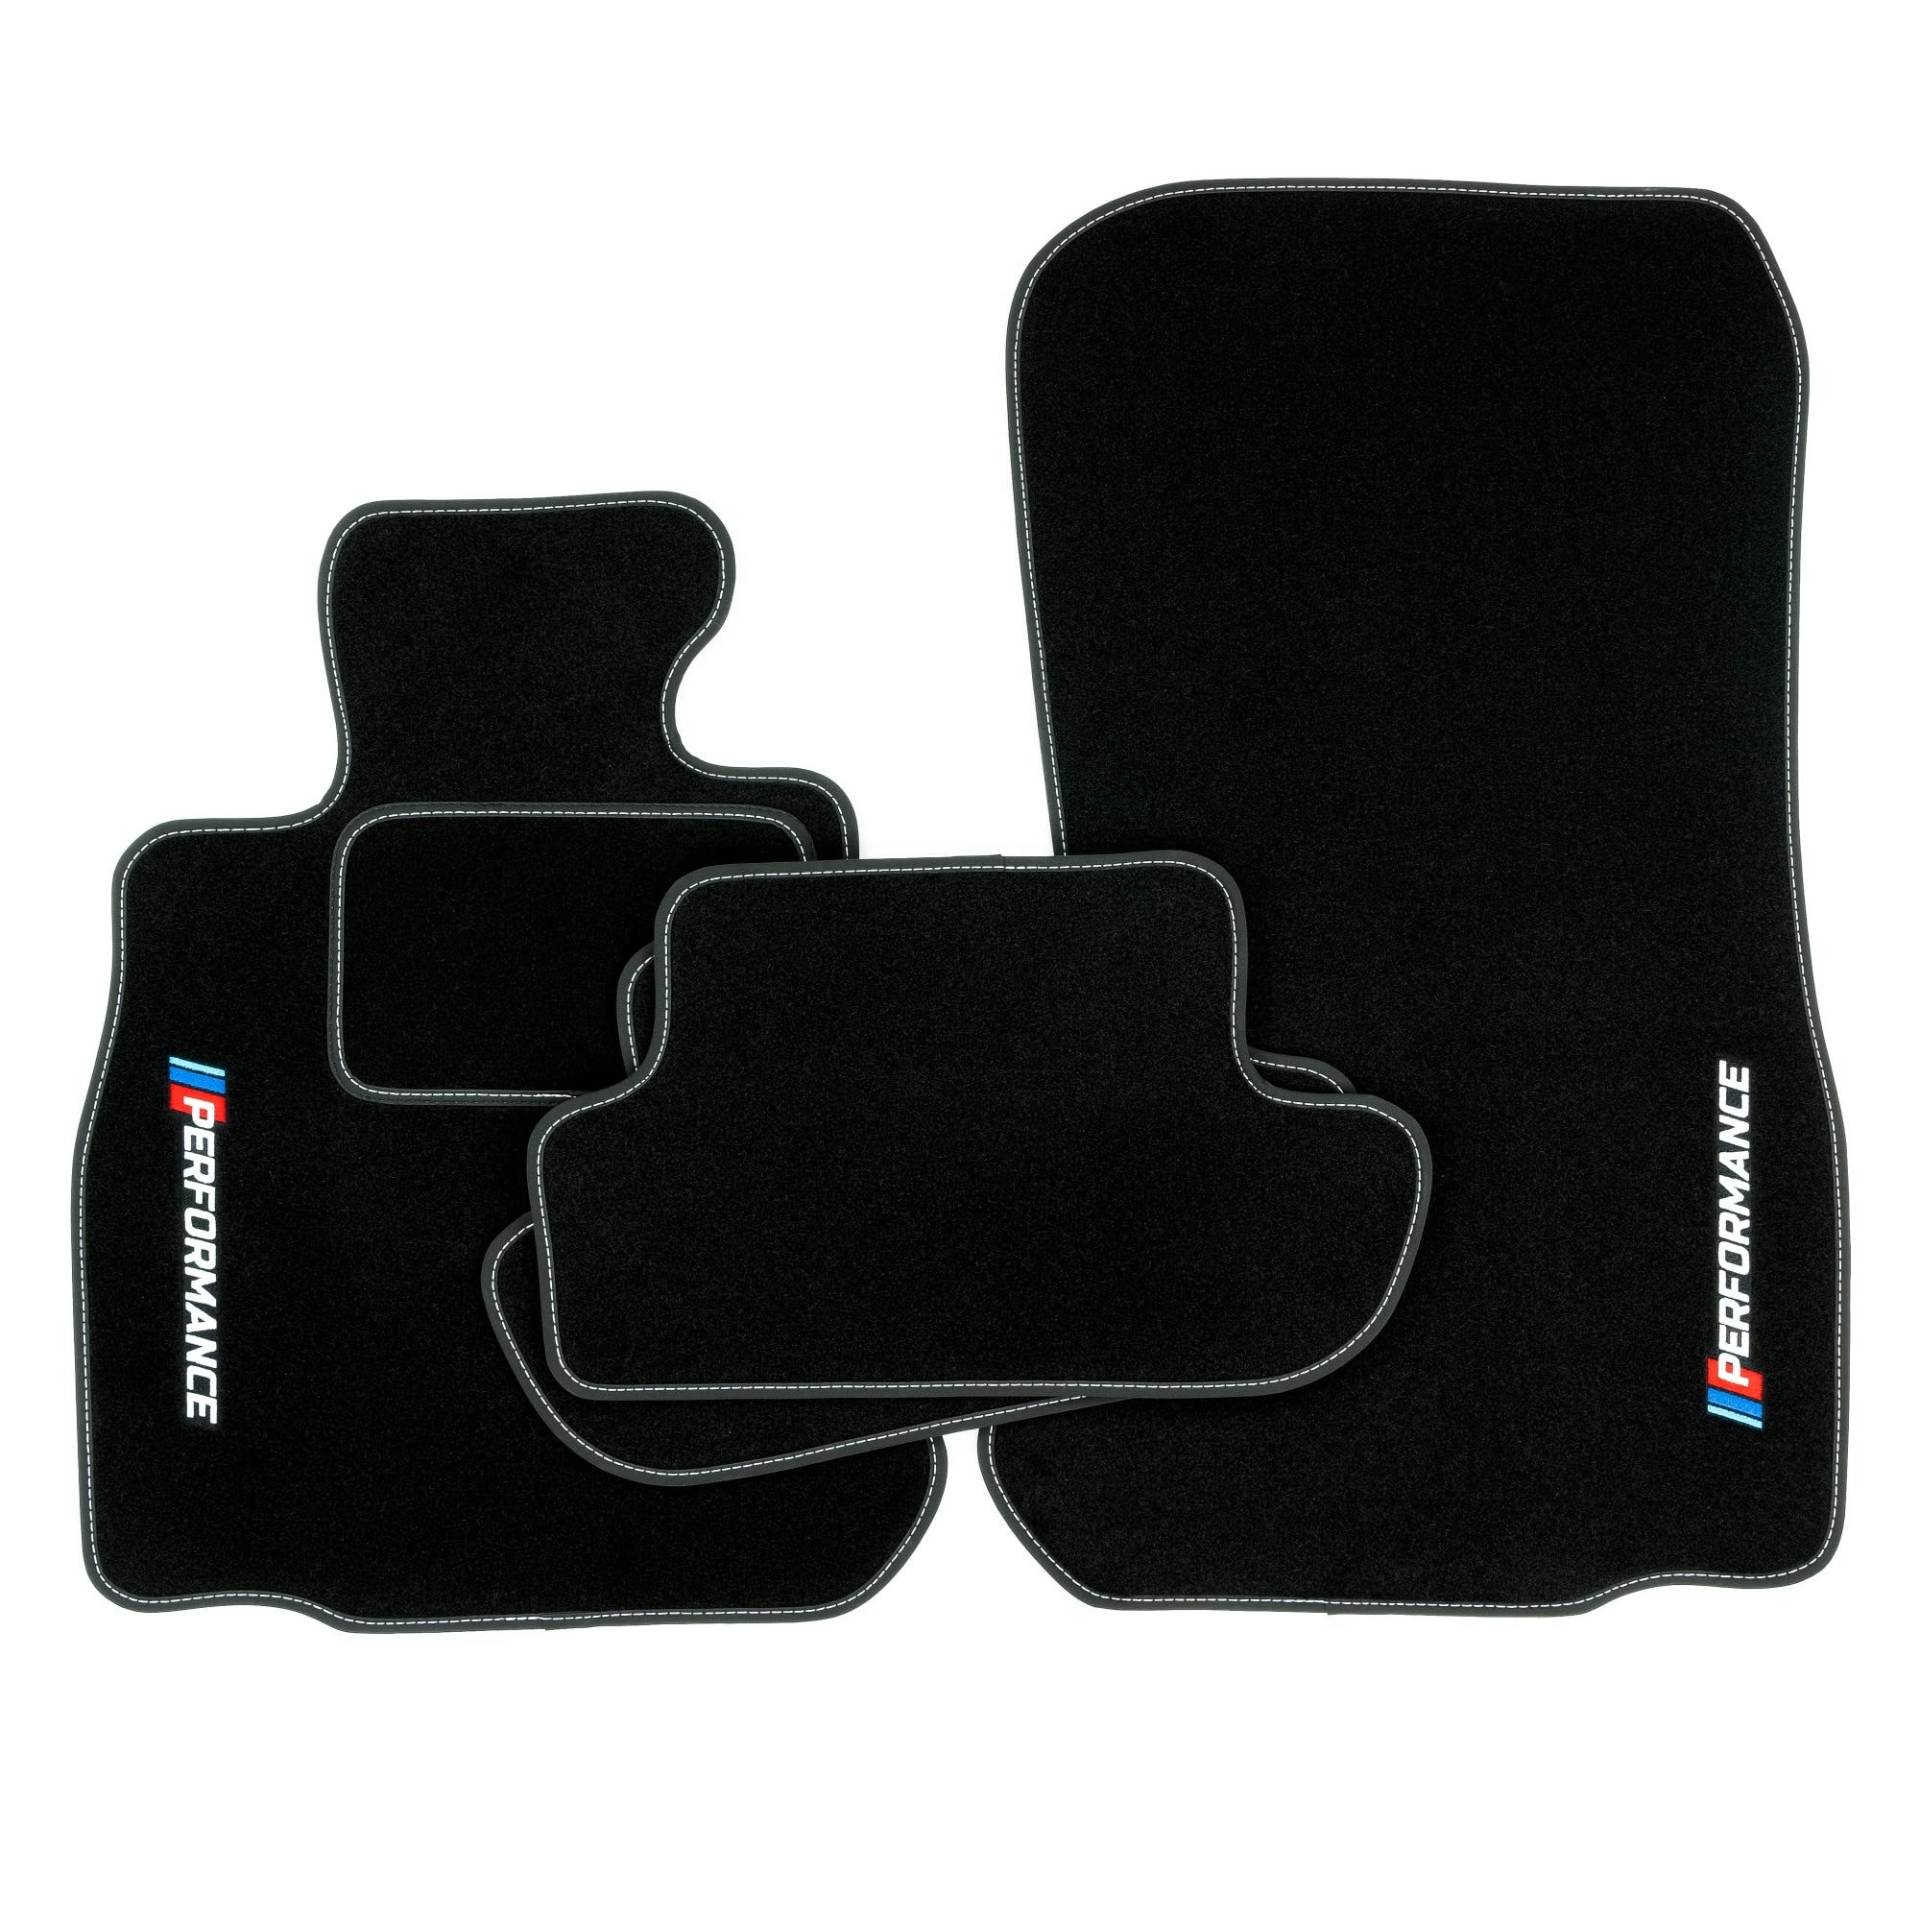 PERFORMANCE Personalisierte Velours-Fußmatten für BMW 6er F13 ab 2011 - Personalisierte, Matt, Weiß - halten Sie Ihr Auto sauber und komfortabel mit unseren Fußmatten von PERFORMANCE